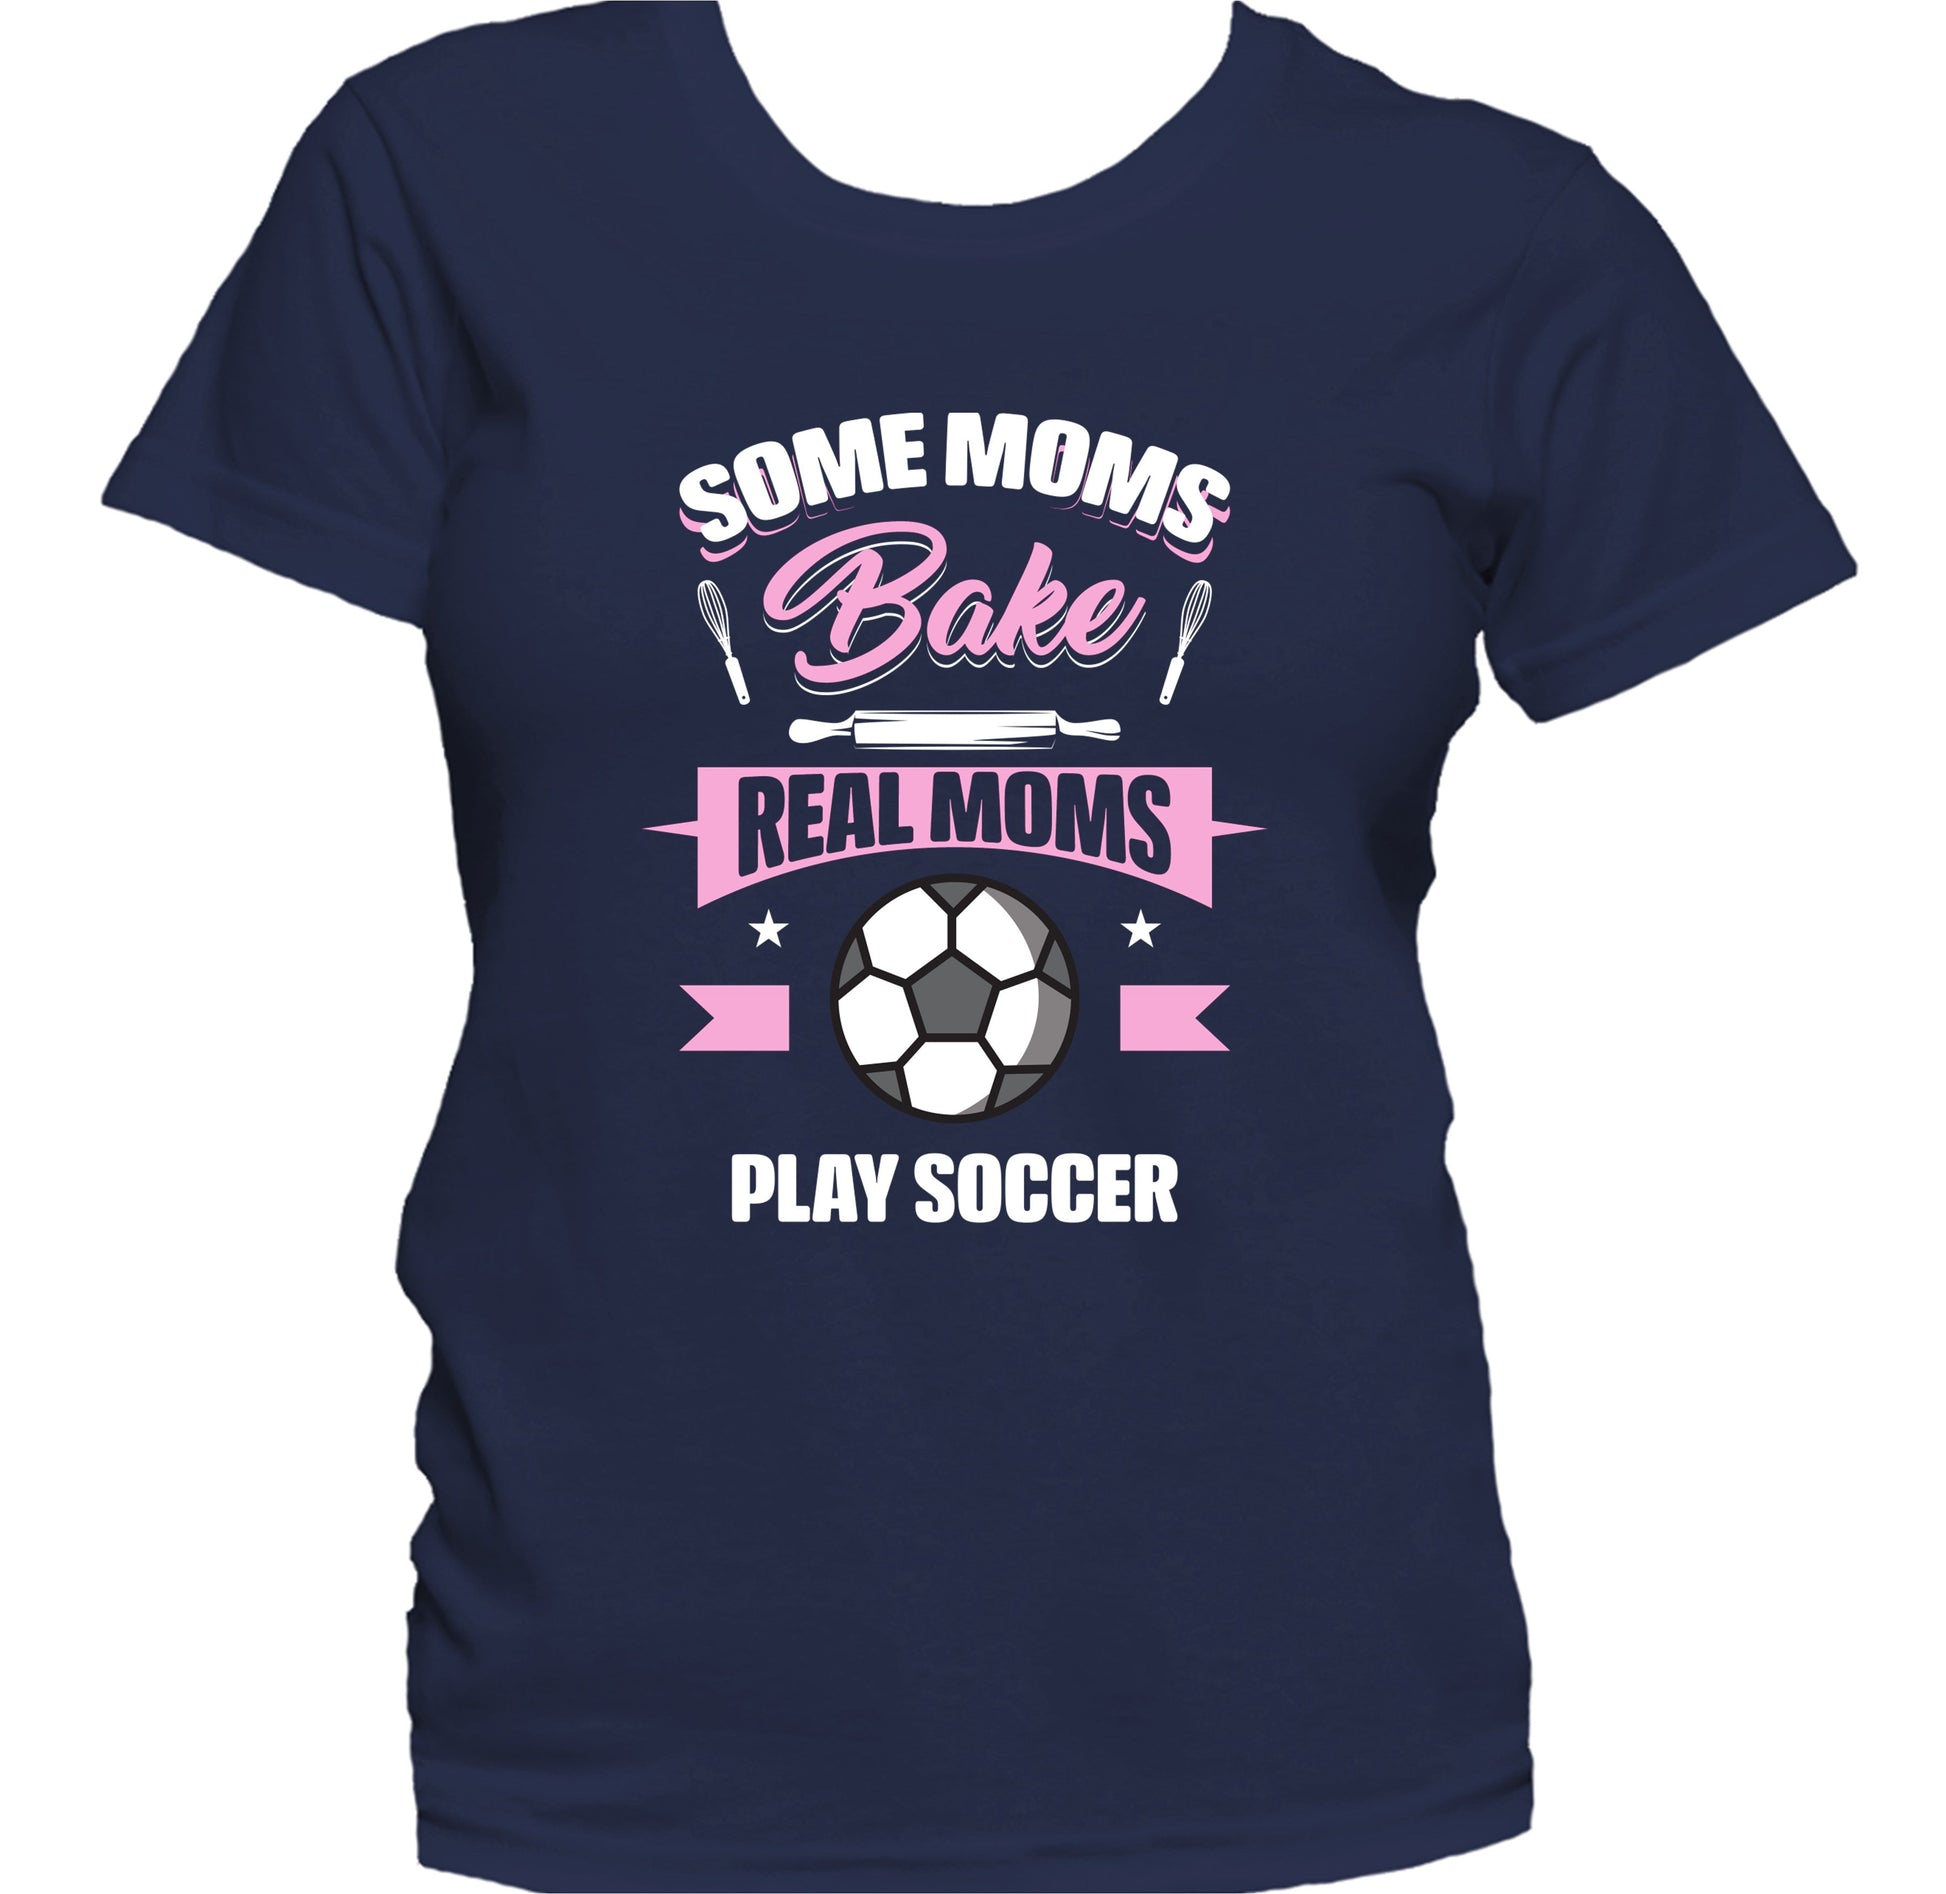 Some Moms Bake Real Moms Play Soccer Funny Soccer Mom Women's T-Shirt